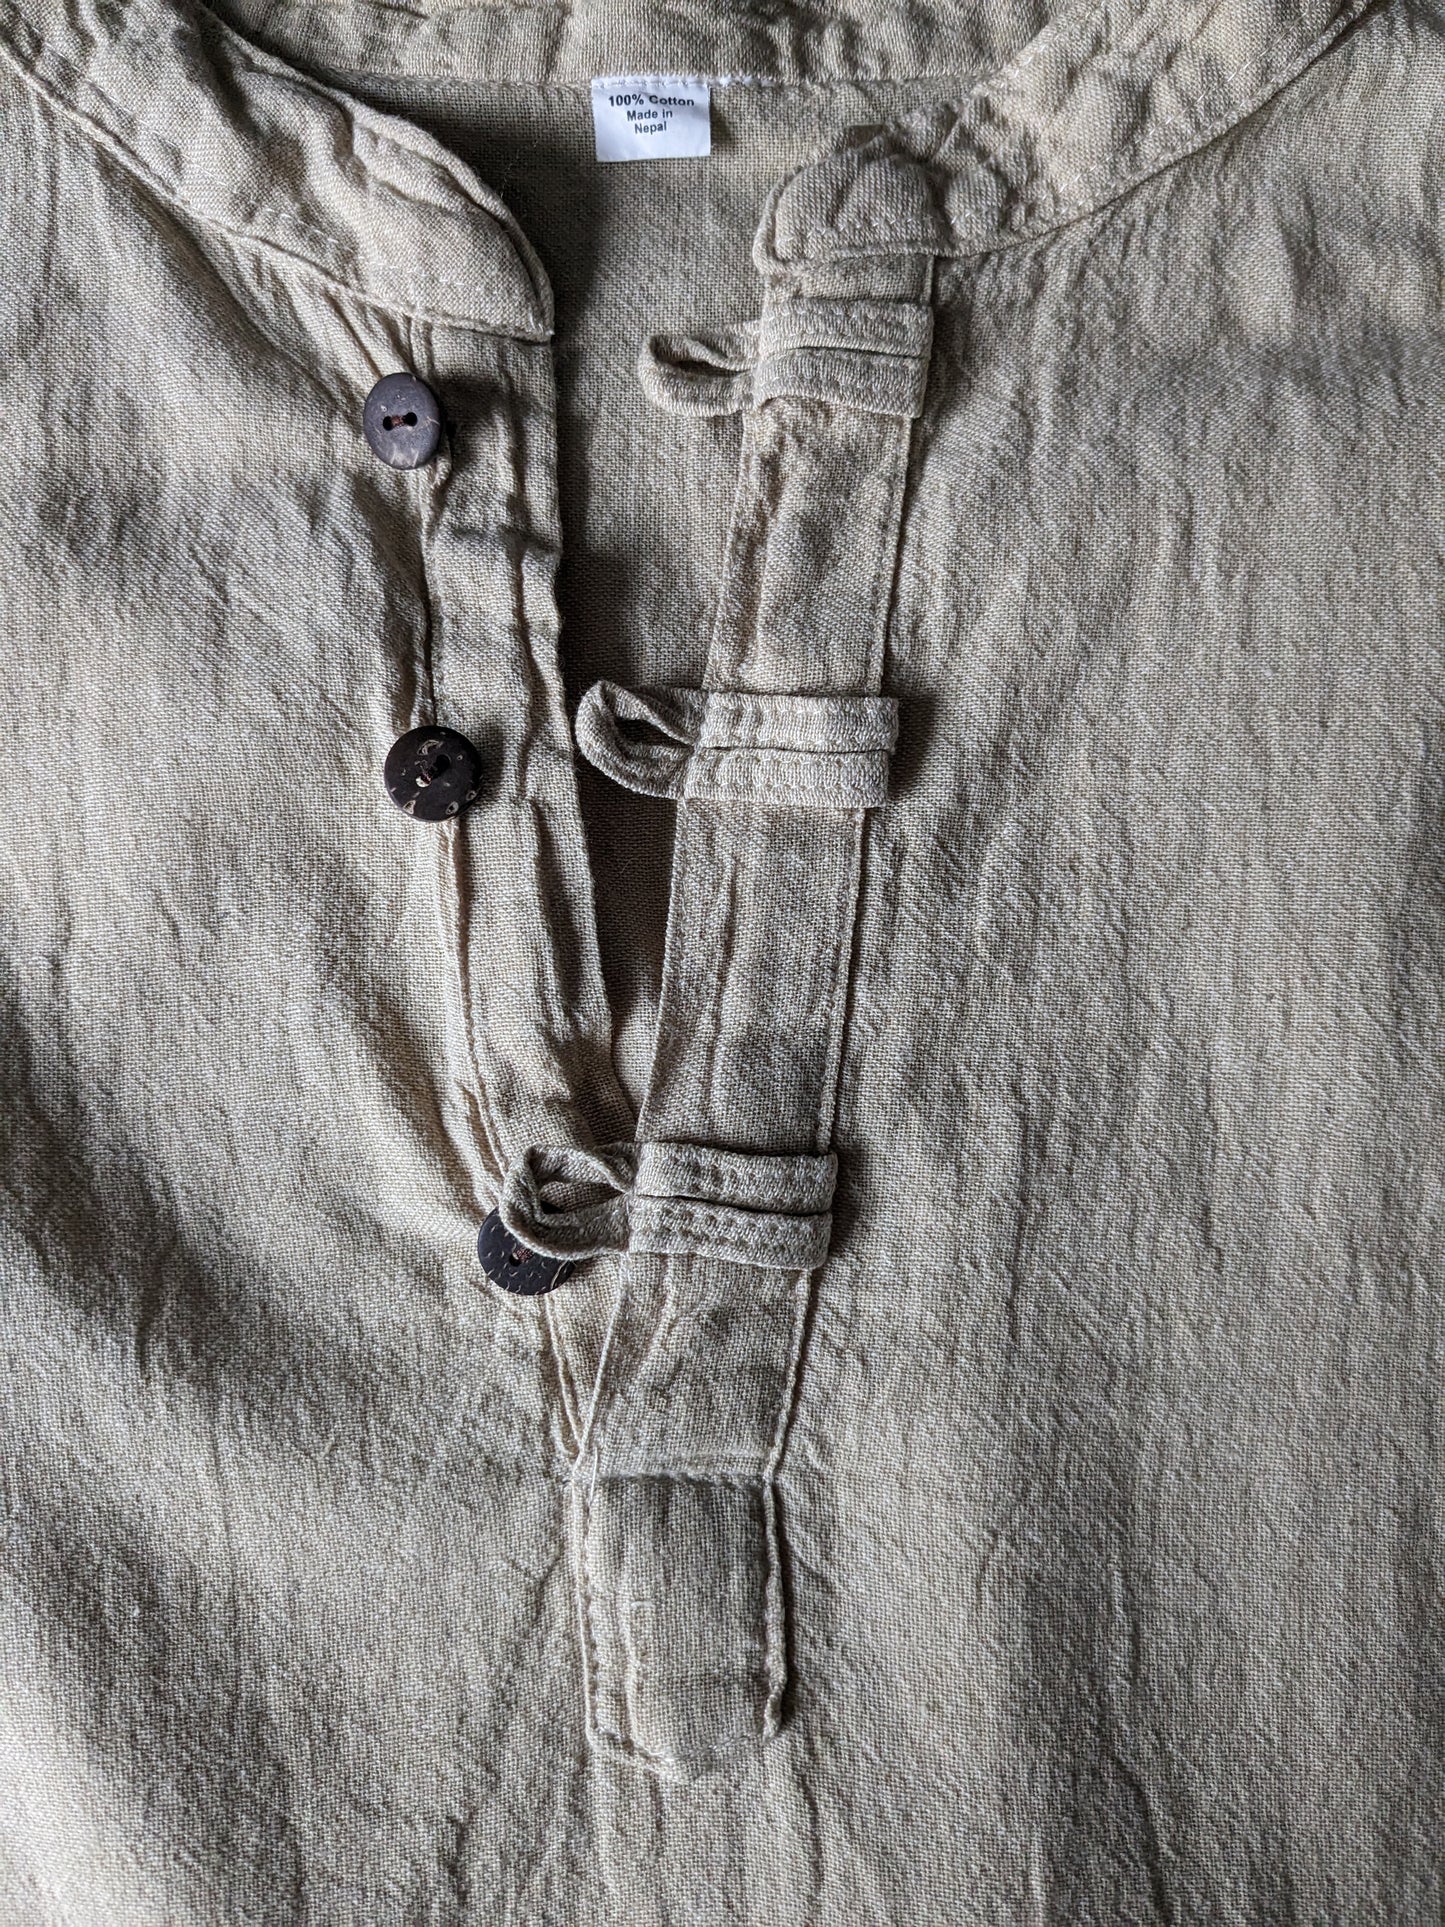 Camisa vintage / manga larga de manga larga con botones y collar MAO / elevado. Marrón claro. Talla M.